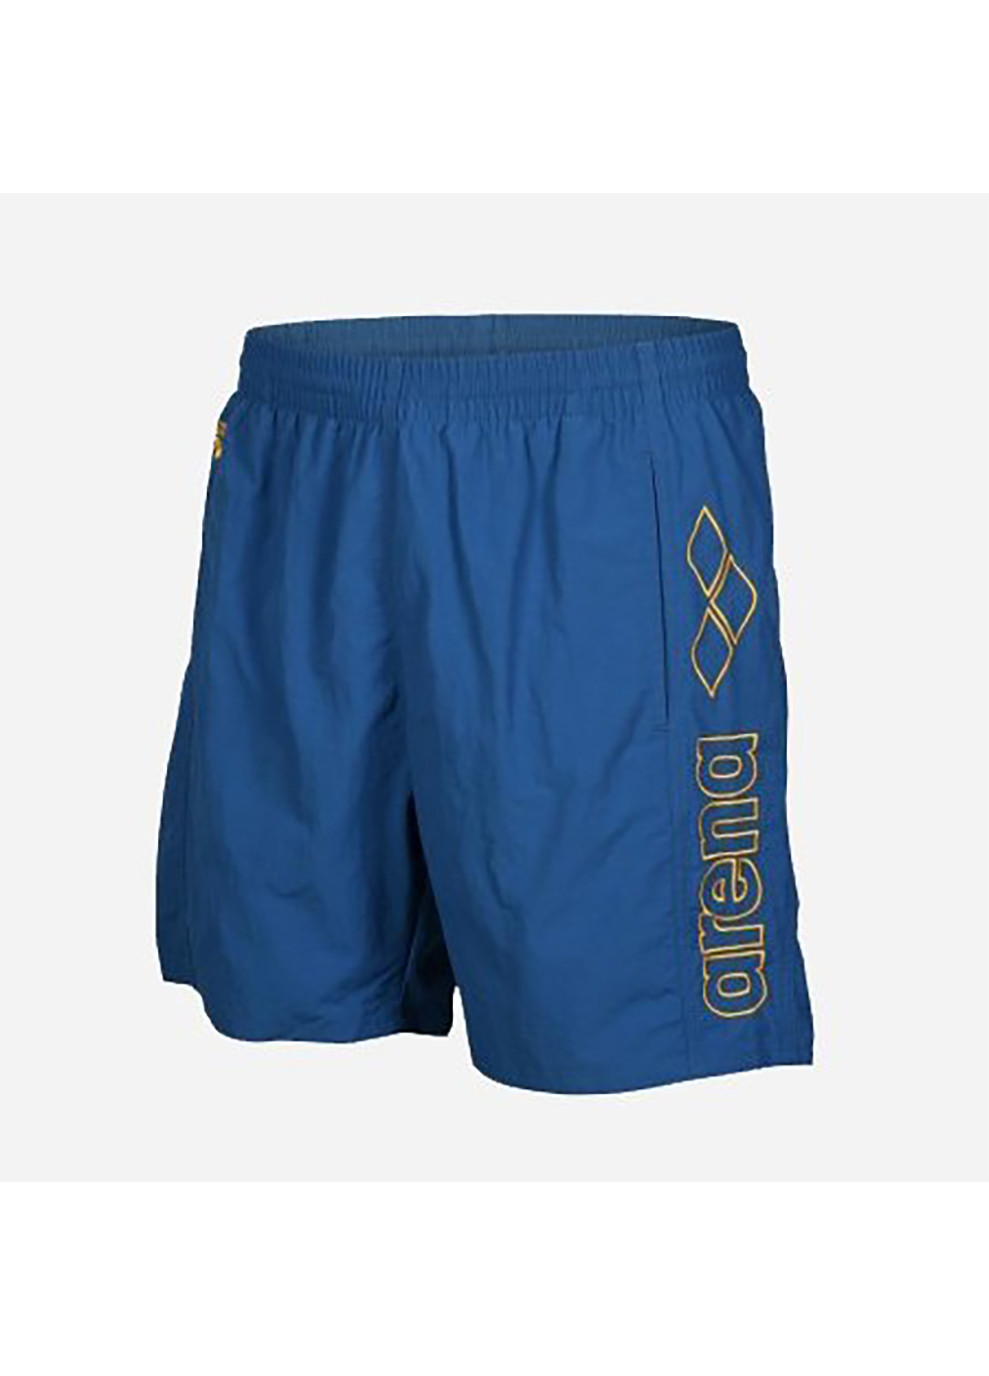 Мужские голубые спортивные плавки-шорты для мужчин berryn голубой Arena